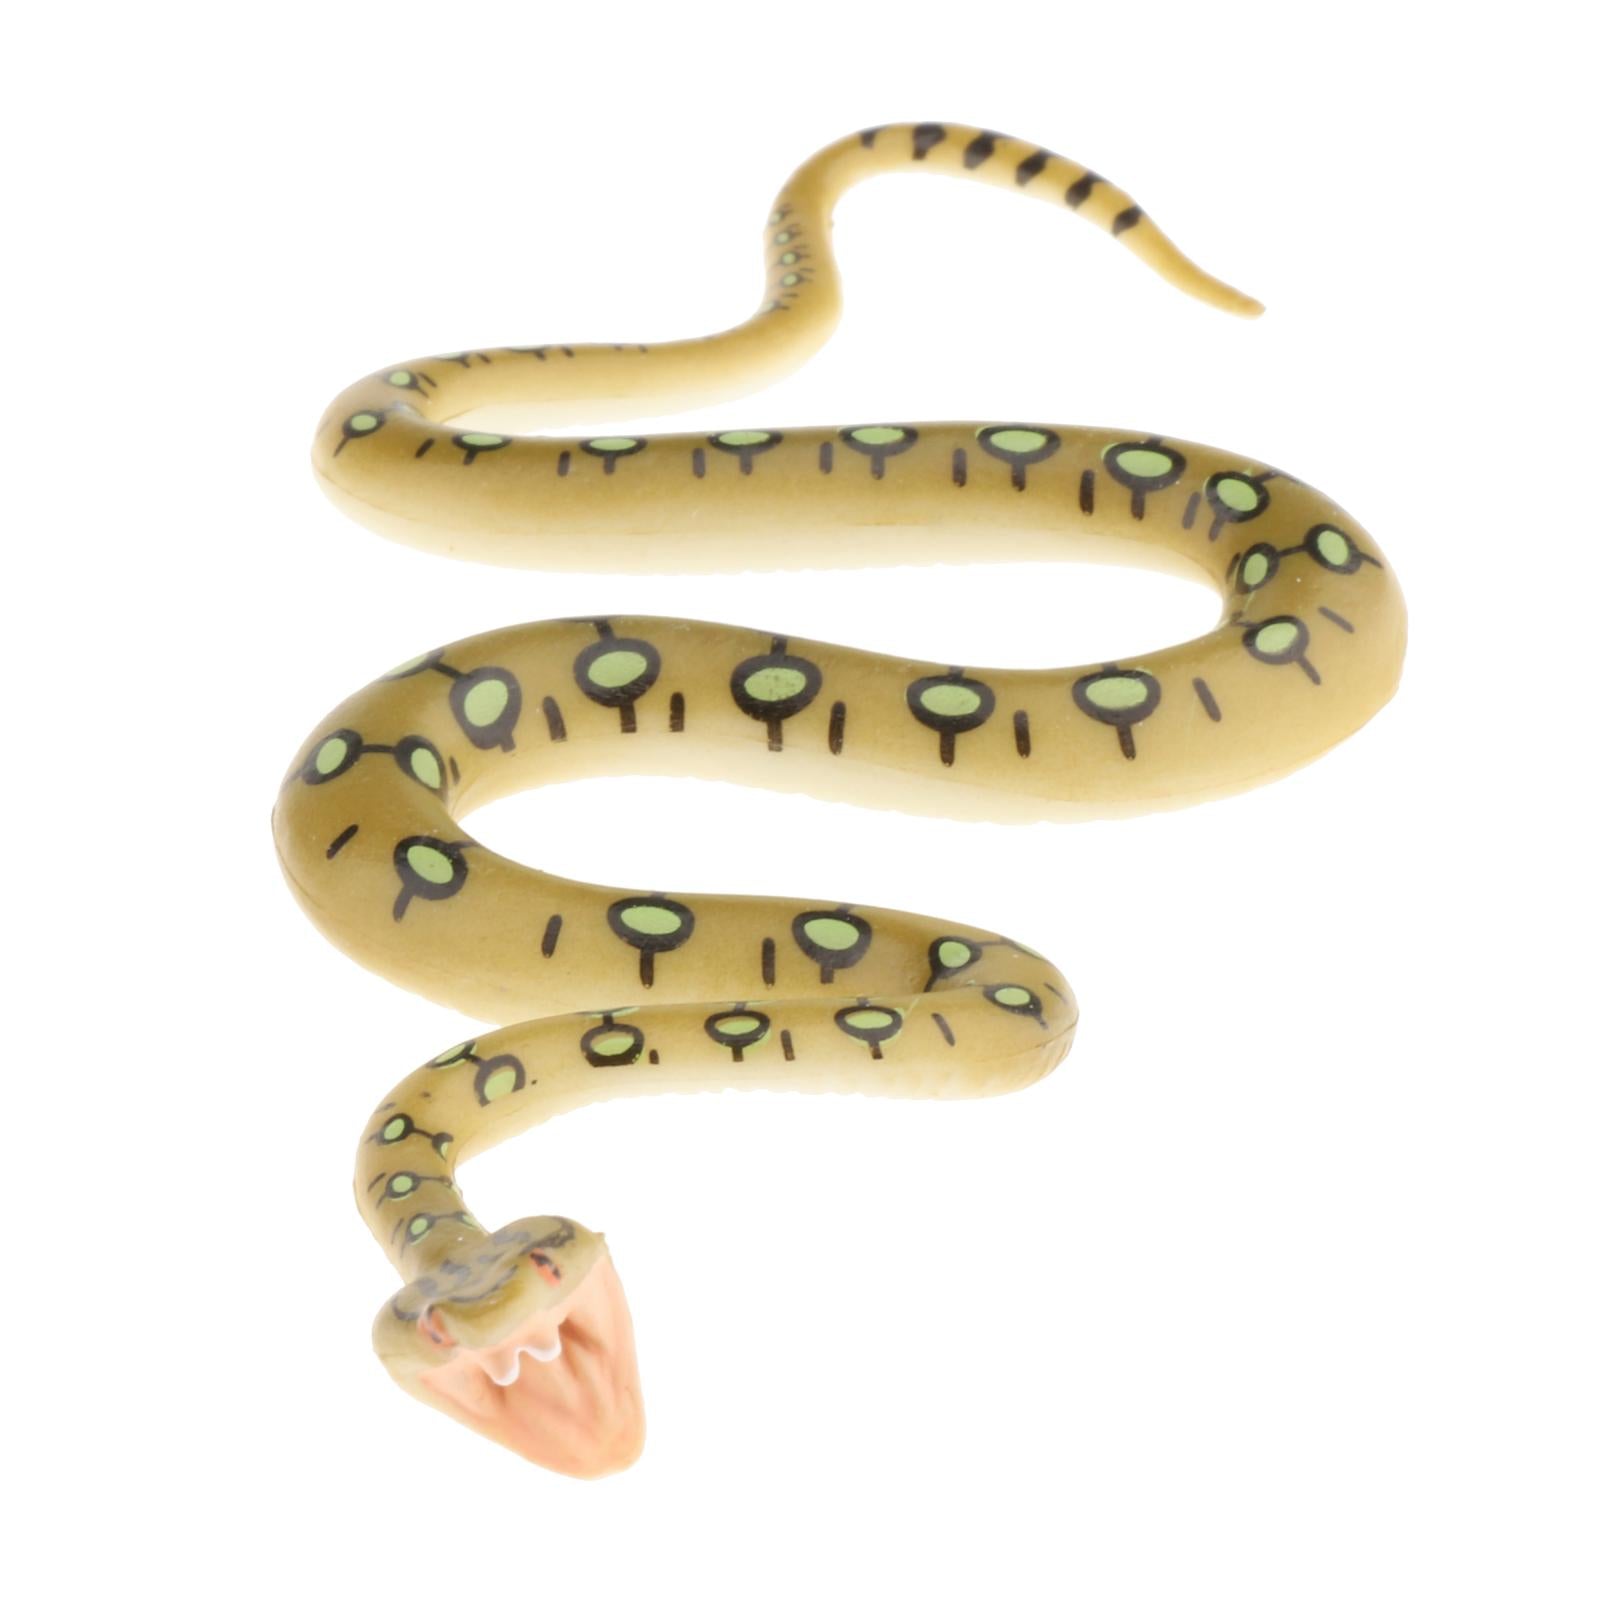 Plastic Snake Figurines Toys Collector for Kids Bag Filler Gift Python